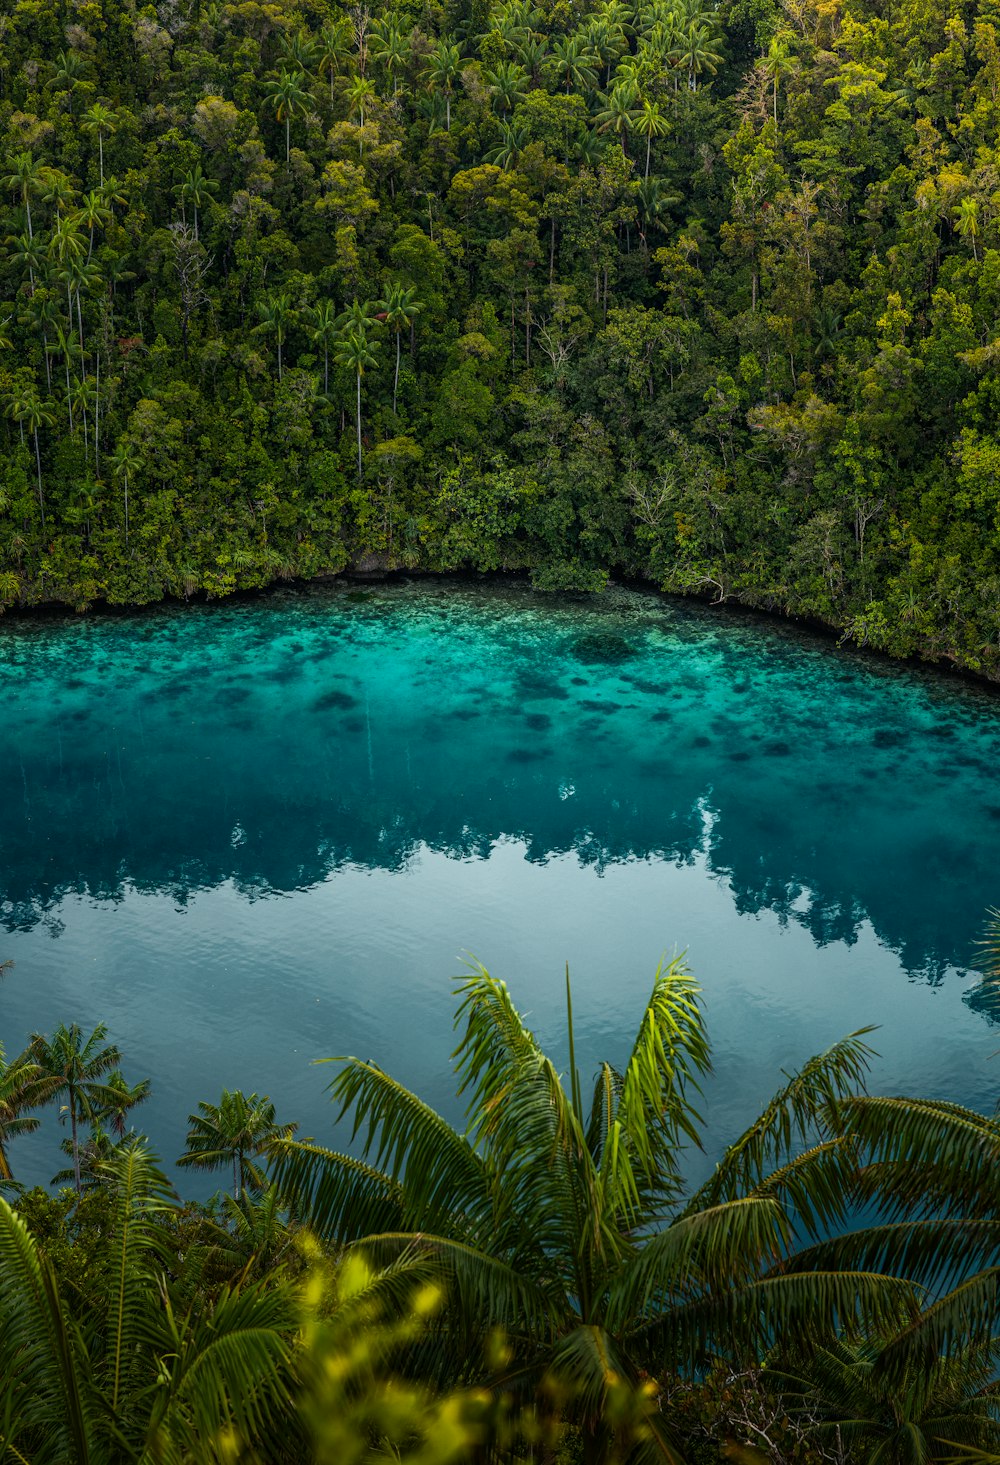 Un lago blu circondato da alberi in mezzo a una foresta